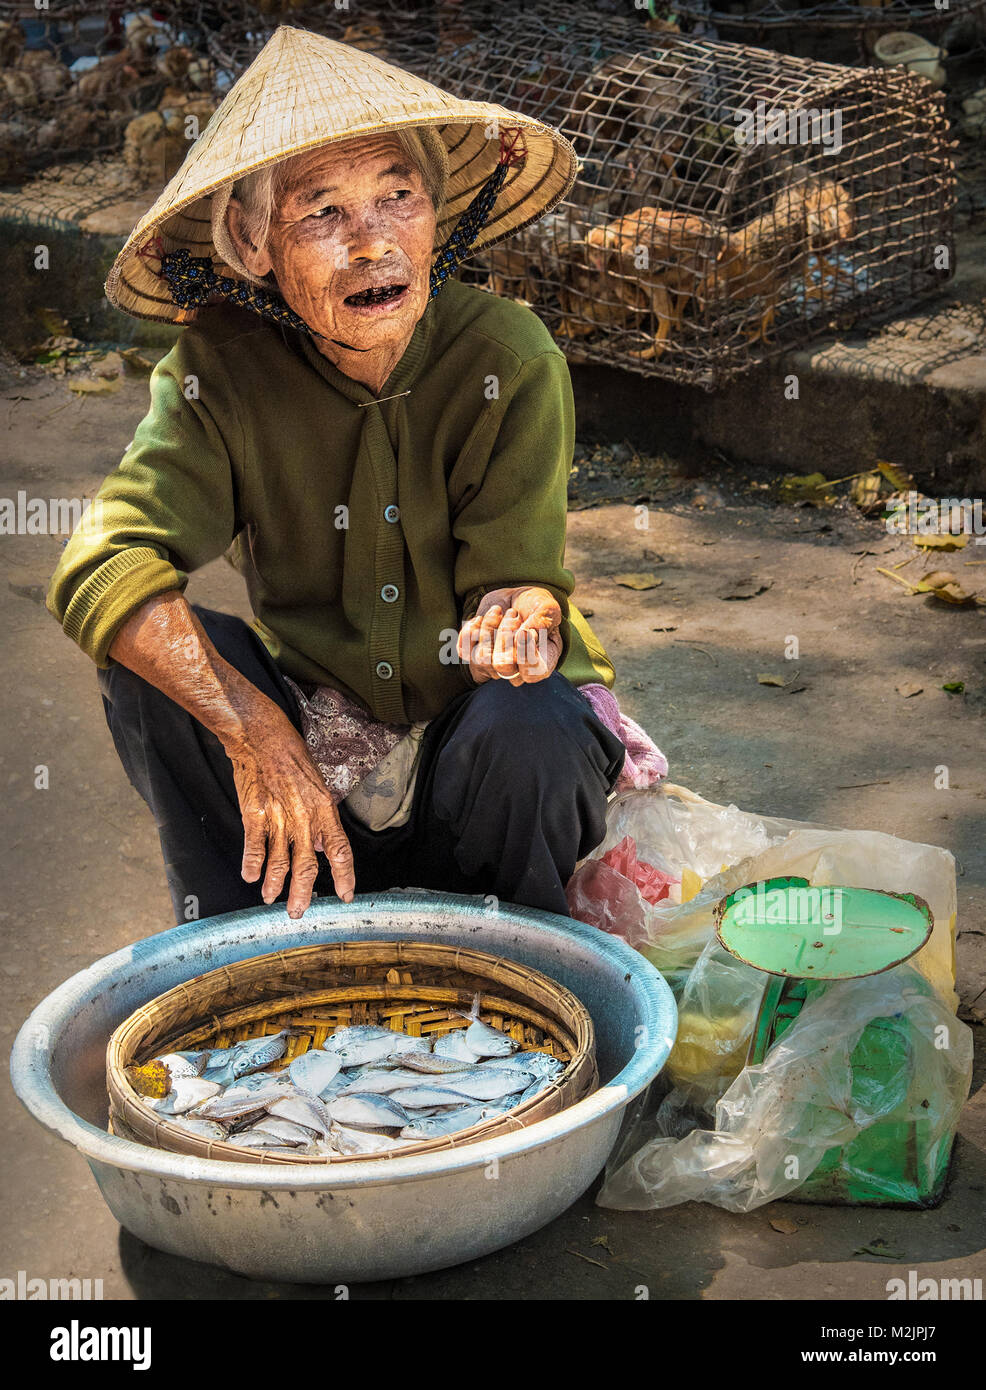 Une dame vietnamienne âgée qui vend du poisson à partir d'un petit bol dans le marché de rue de Hoi Une vie quotidienne Vietnam Asie. Banque D'Images